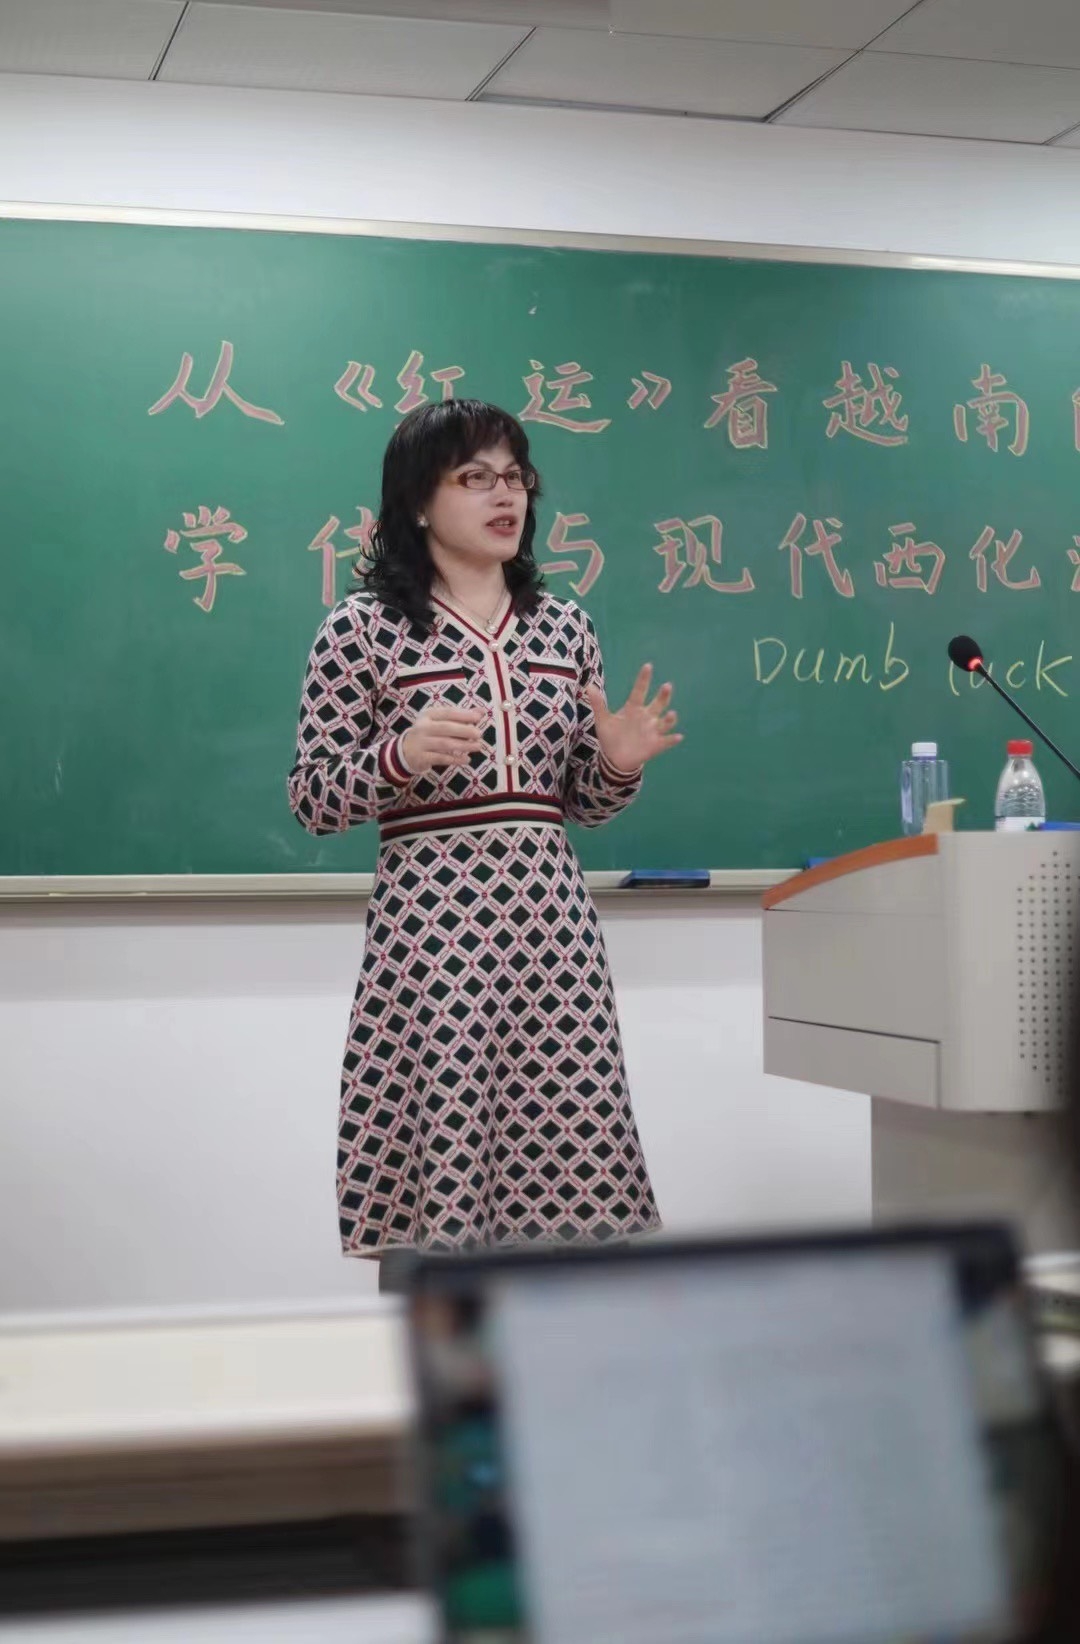 夏露在中国一所大学教授作品《红运》